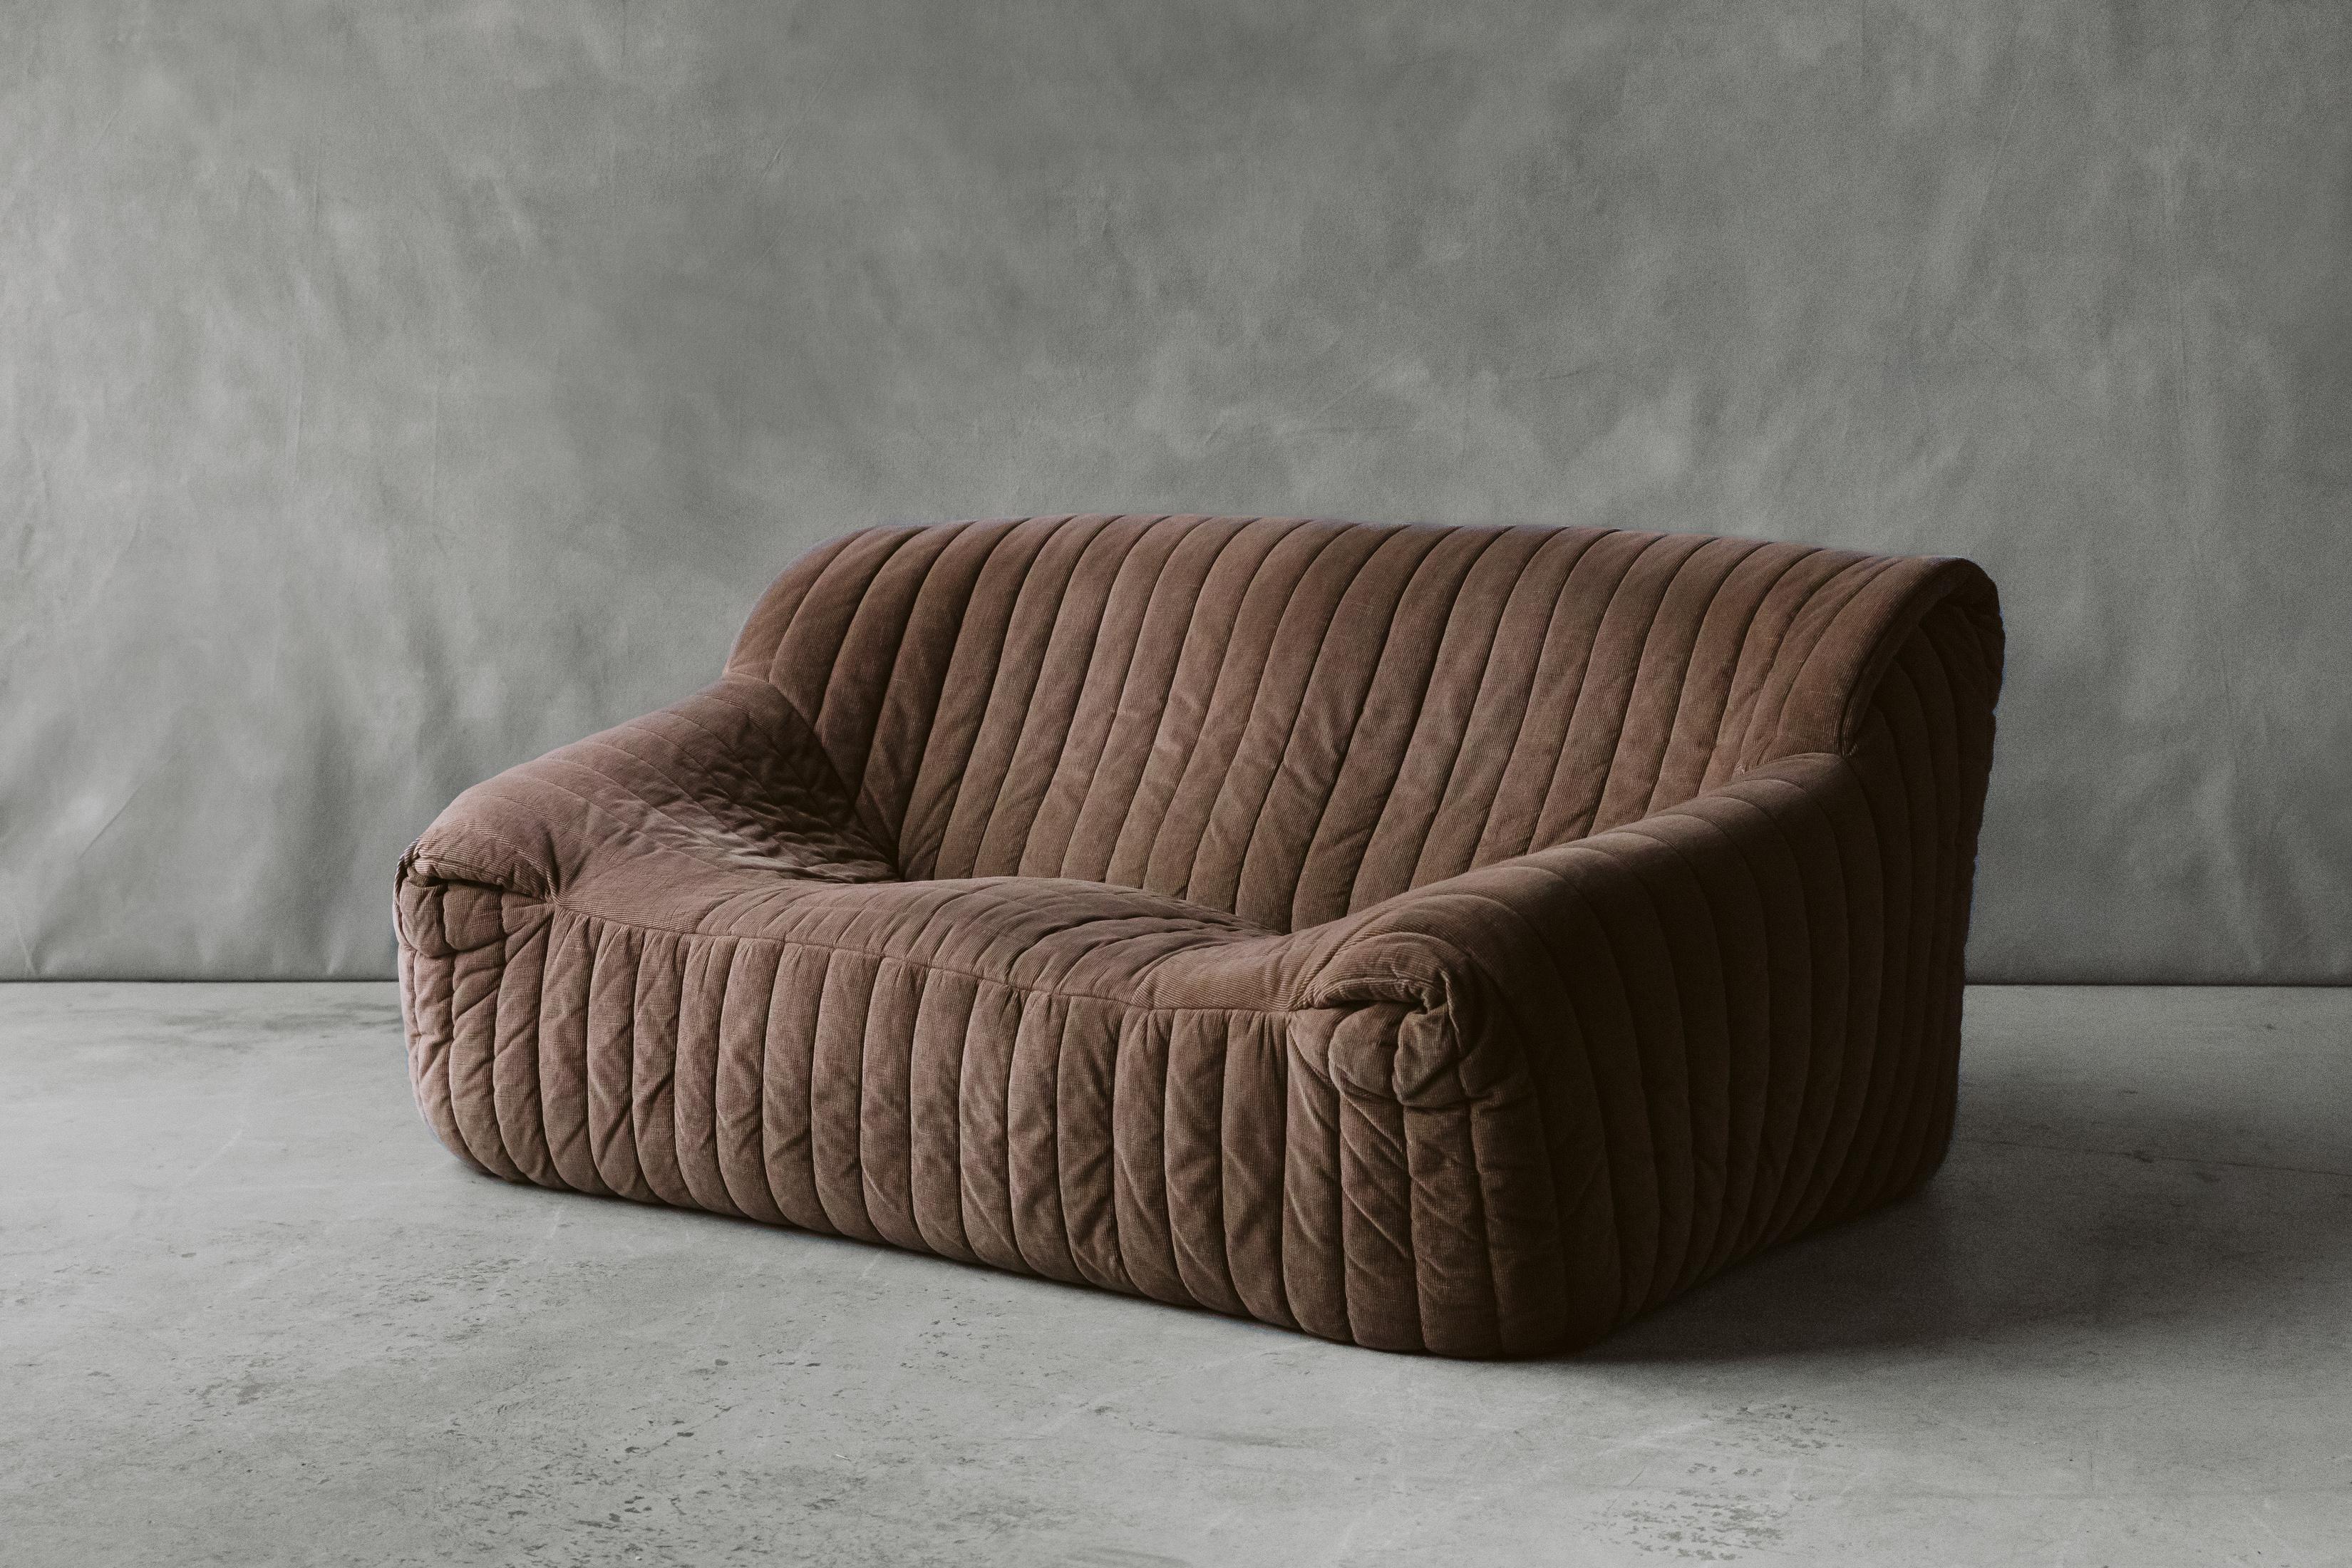 Zweisitziges Vintage-Sofa „Cinna“ aus Frankreich, Vintage Line Roset, Vintage, um 1960 (Europäisch)